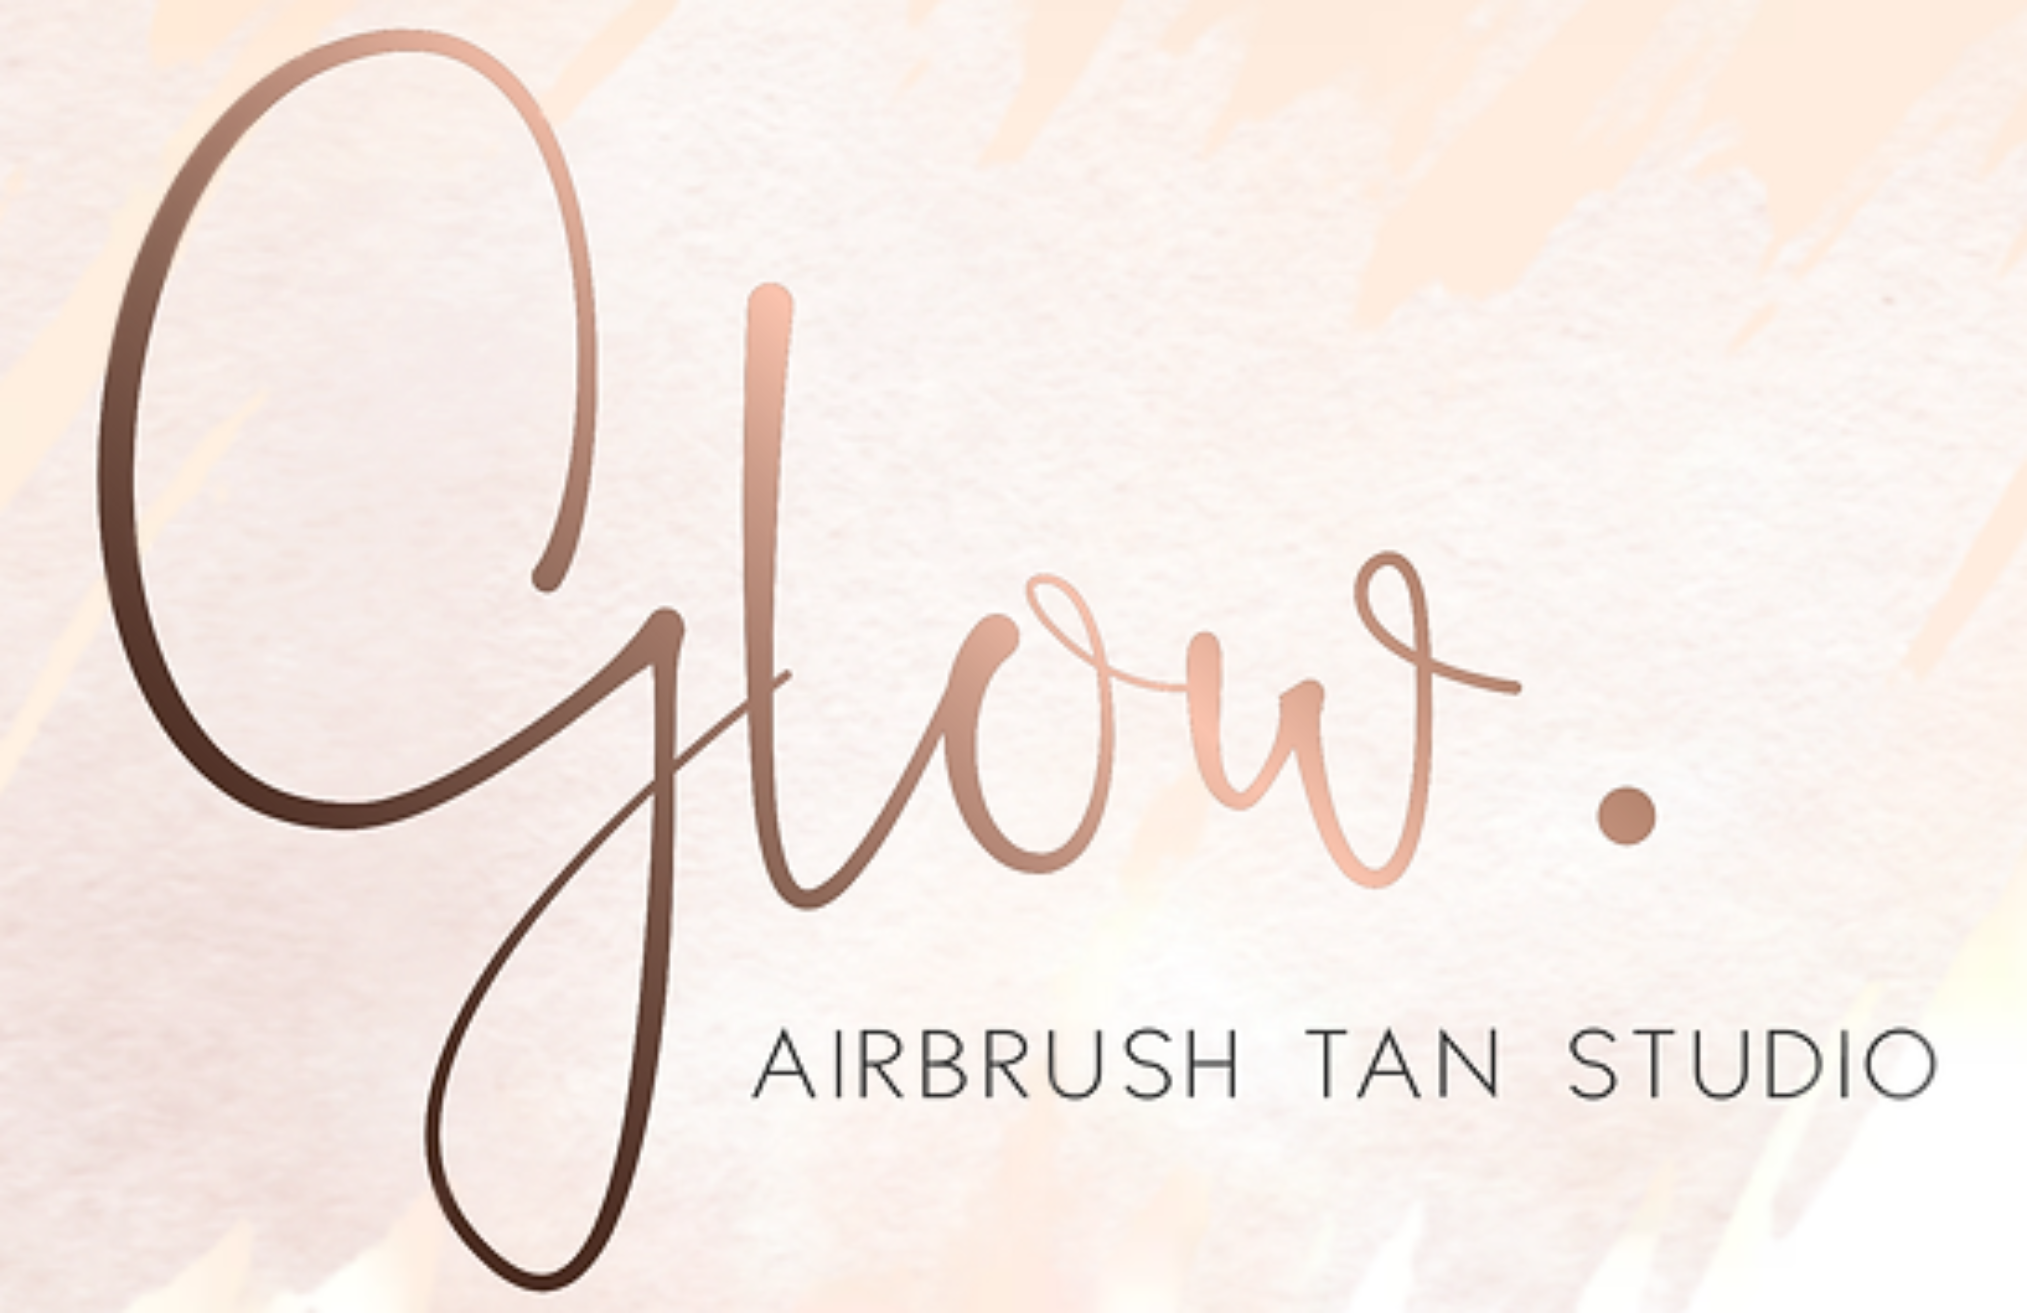 Glow. Airbrush Tan Studio